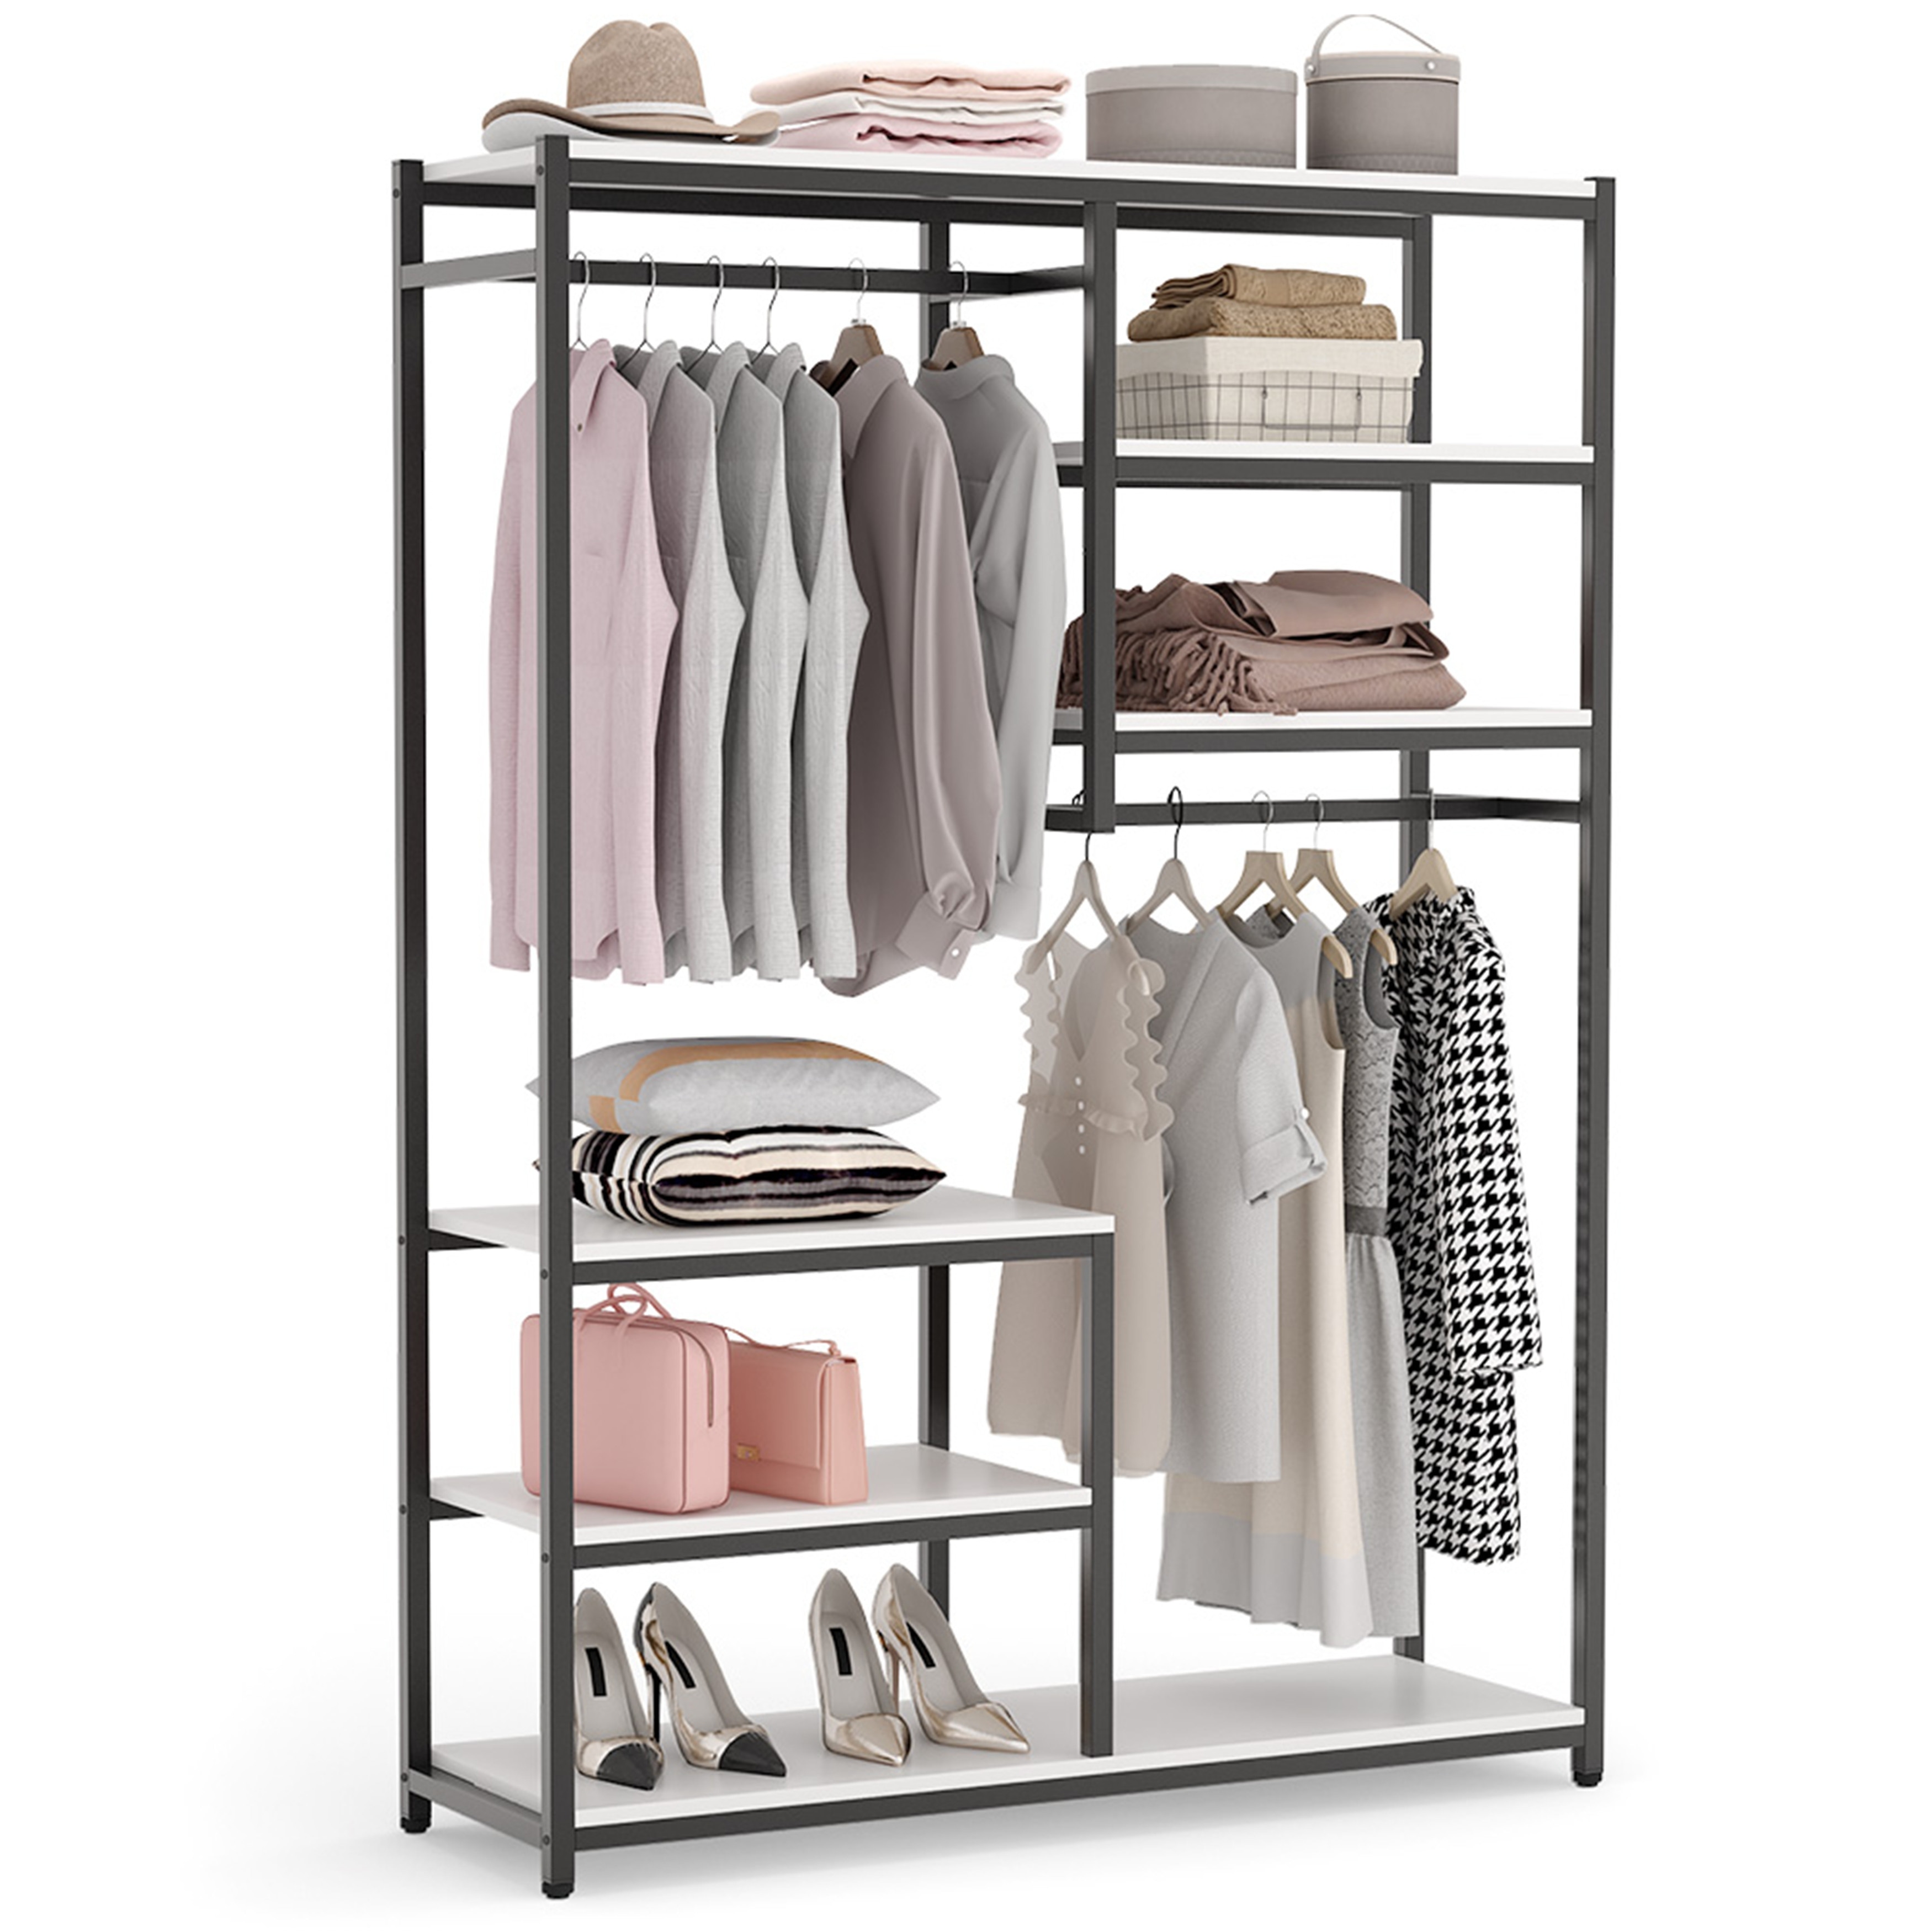 Details about   Portable Clothes Storage Closet Organizer Shelf Wardrobe Rack Shelves a e 17 